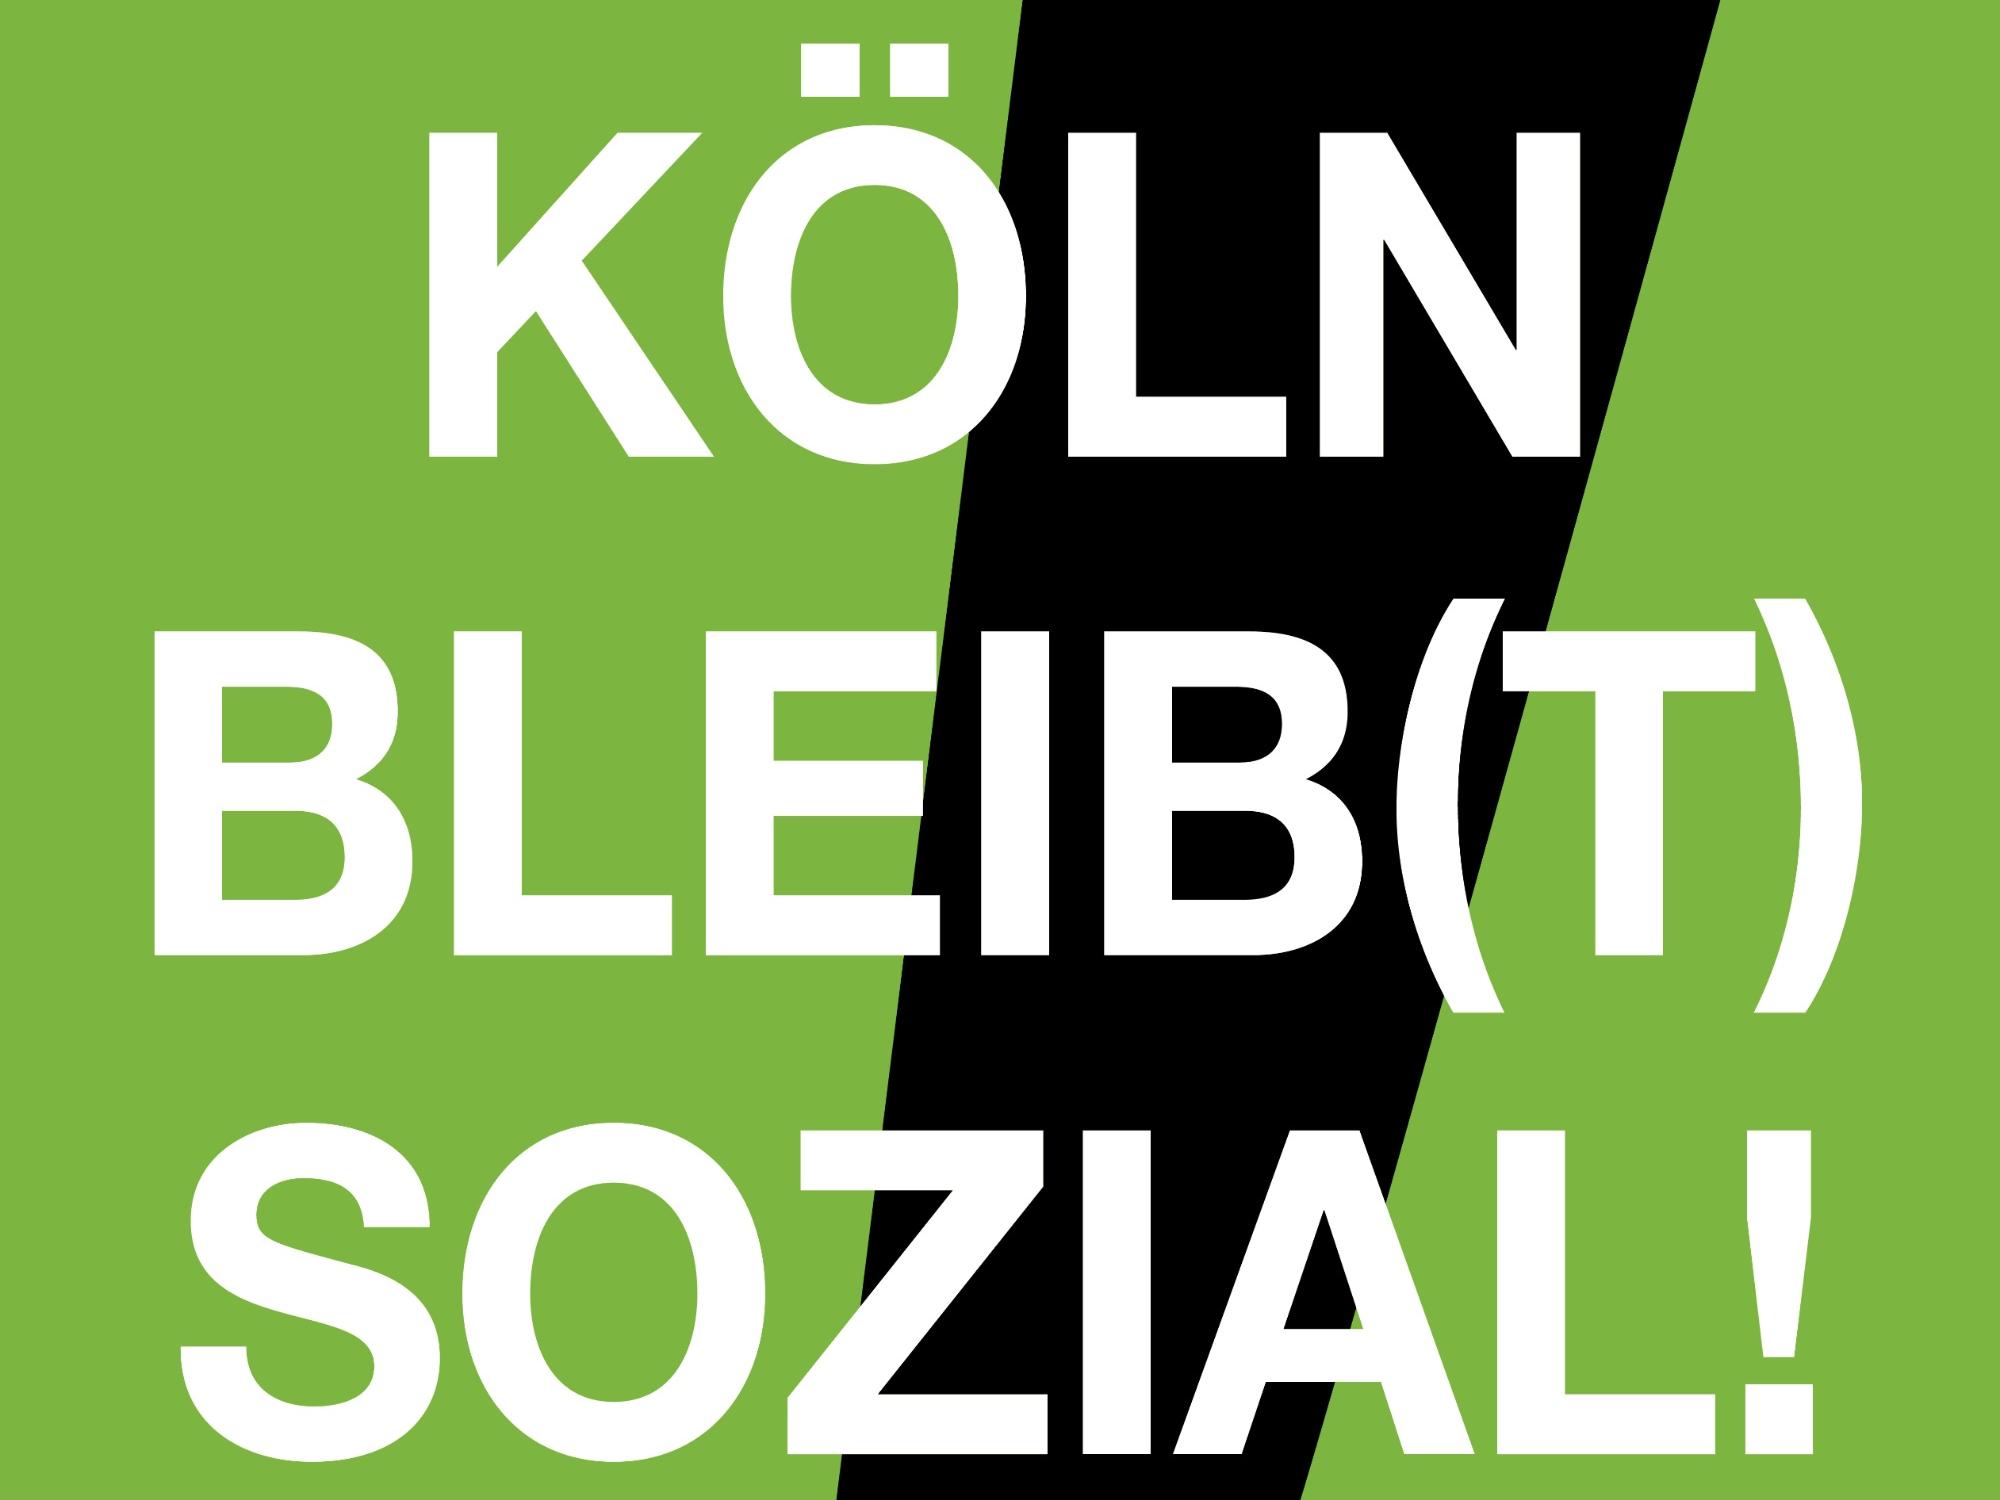 liga_koeln_bleibt_sozial_plakat_